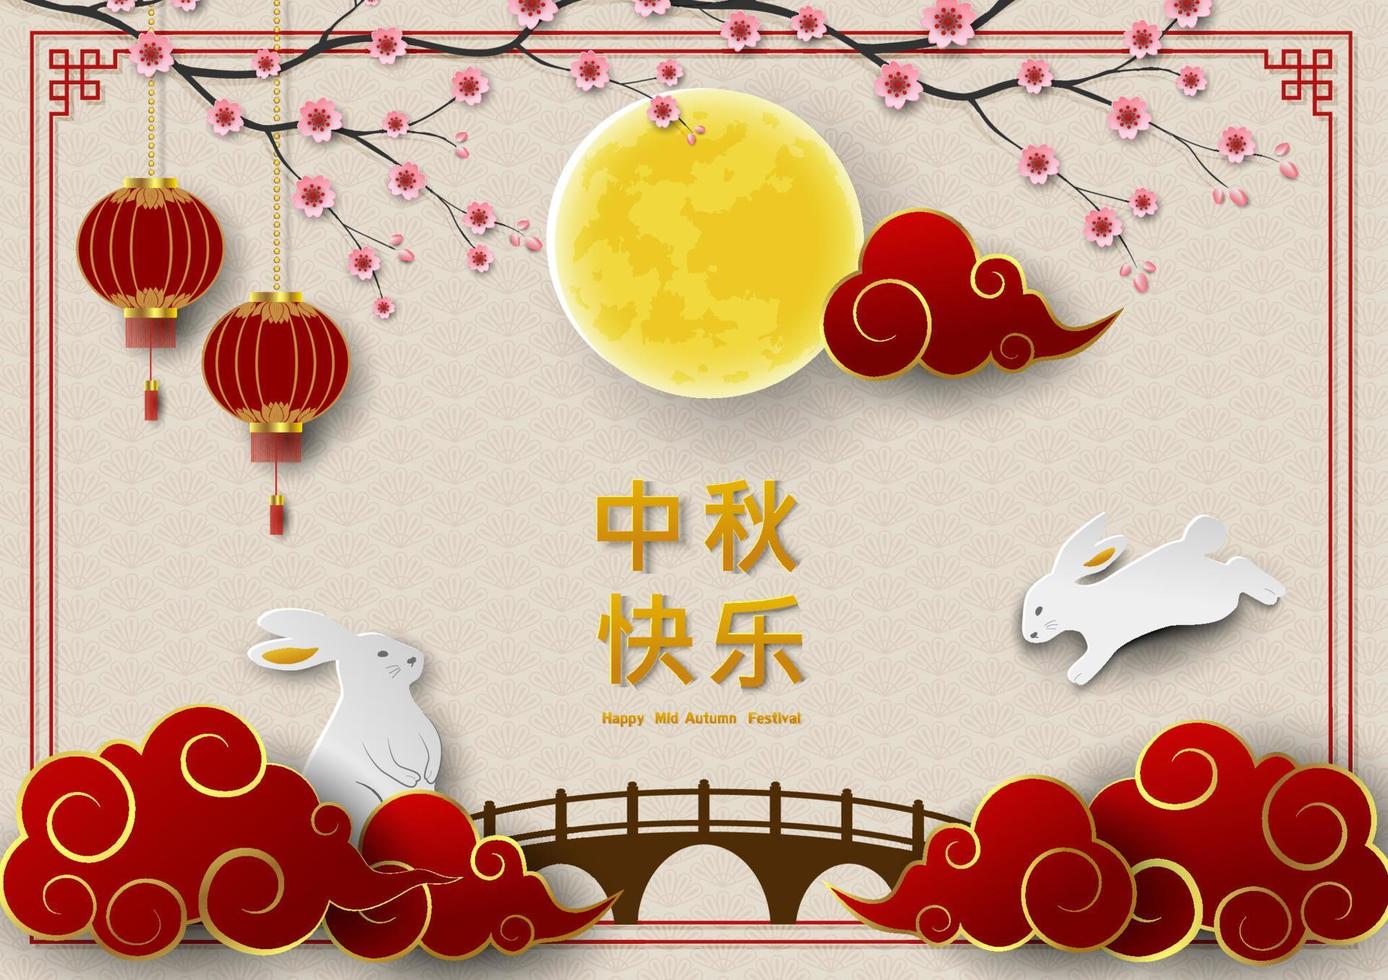 midden herfst festival of maan festival groet kaart met konijnen, vol maan en wolk Aan Aziatisch stijl, chinees vertalen gemeen midden herfst festival vector